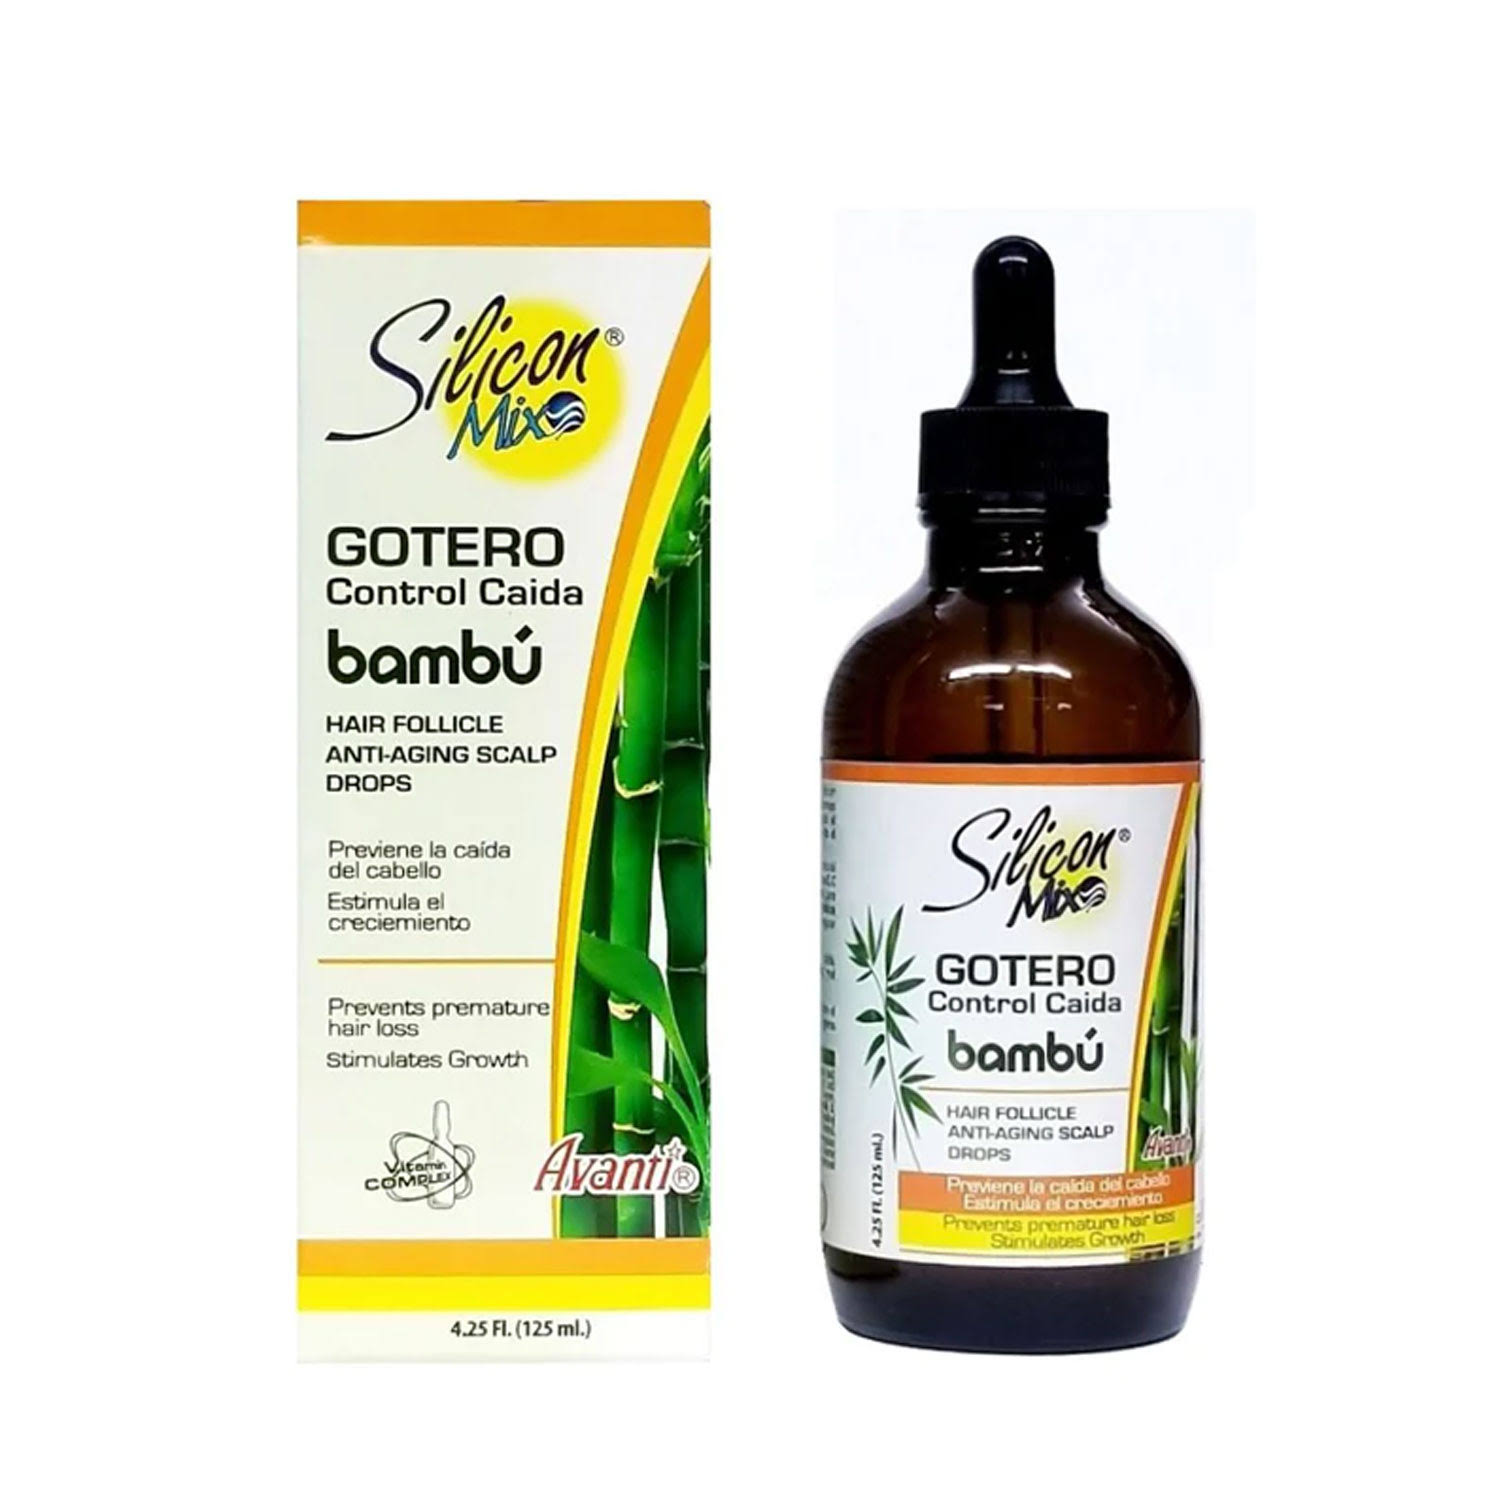 Silicon Mix Bambu Hair Follicle Anti-Aging Scalp Drops - 4.25 oz